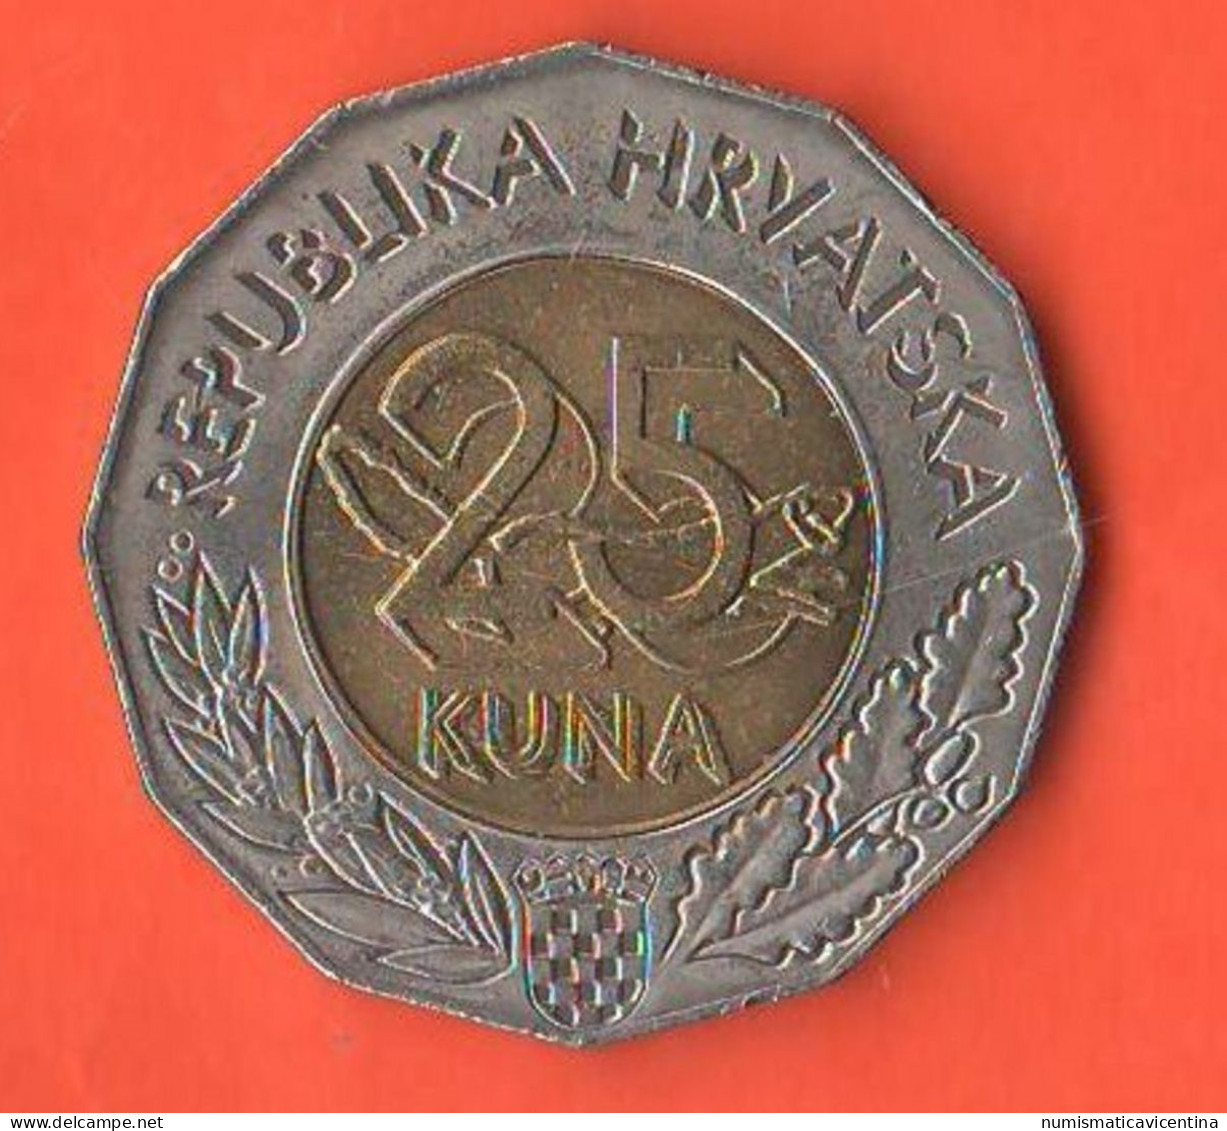 Croazia 25 Kuna 1997 Croatia ONU Republic Hrvatska Croatie Bimetallic Coin - Croatia